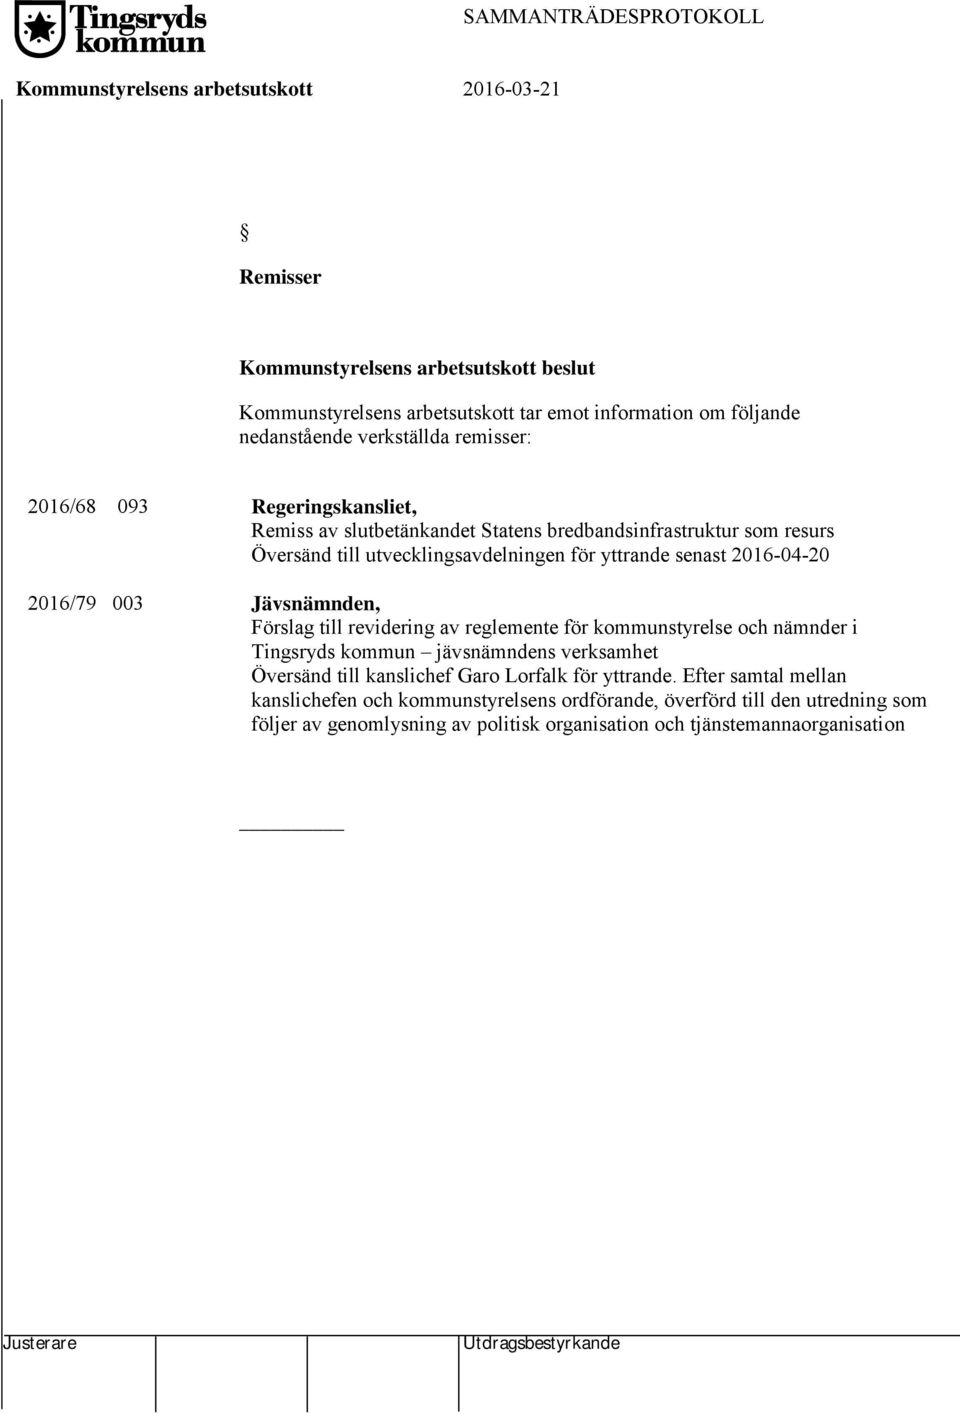 2016-04-20 Jävsnämnden, Förslag till revidering av reglemente för kommunstyrelse och nämnder i Tingsryds kommun jävsnämndens verksamhet Översänd till kanslichef Garo Lorfalk för yttrande.